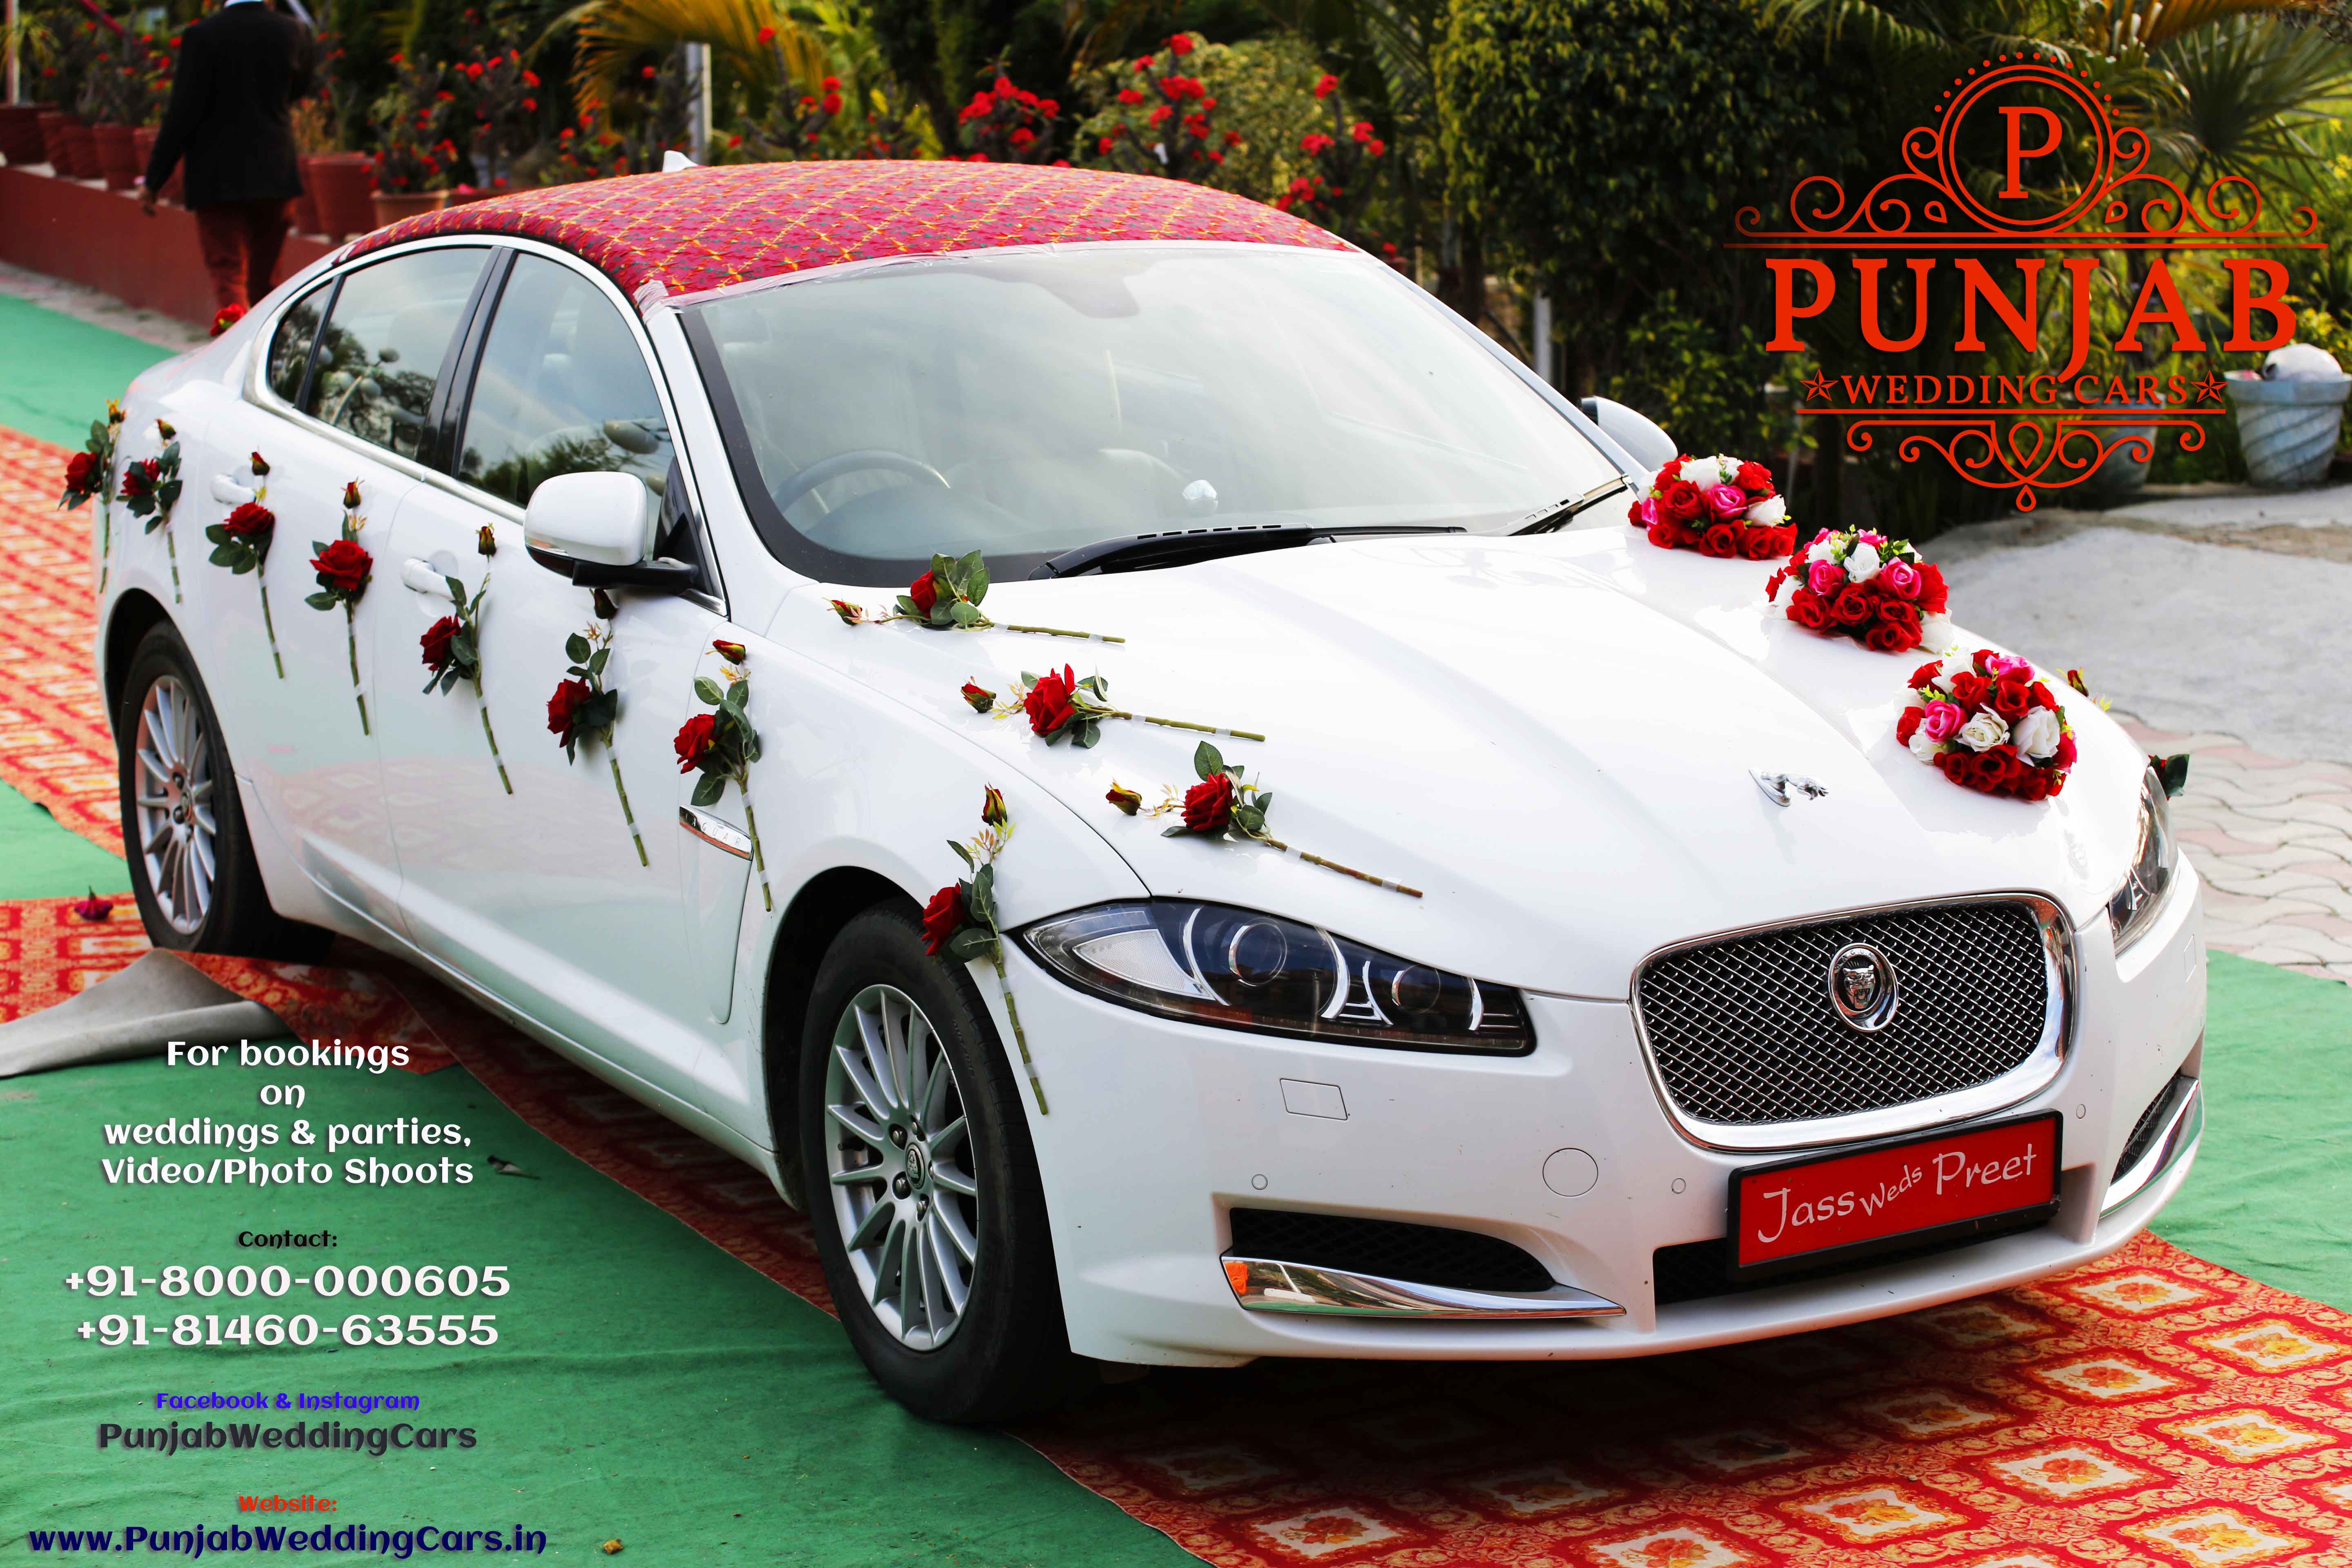 WEDDING CARS -  Jaguar Wedding Cars in India Punjab Patiala Jalandhar Malerkotla Nabha Available in Chandigarh, Jalandhar, Ludhiana, Amritsar, Barnala, Bathinda, Hoshiarpur, Faridkot, Fatehgarh Sahib, Fazilka, Firozpur, Gurdaspur, Kapurthala, Mansa, Moga, Ajitgarh, Ropar, Muktsar, Shahid Bhagat Singh Nagar(first known as Nawan Shahr), Sangrur, Patiala, Pathankot, Tarn Taran